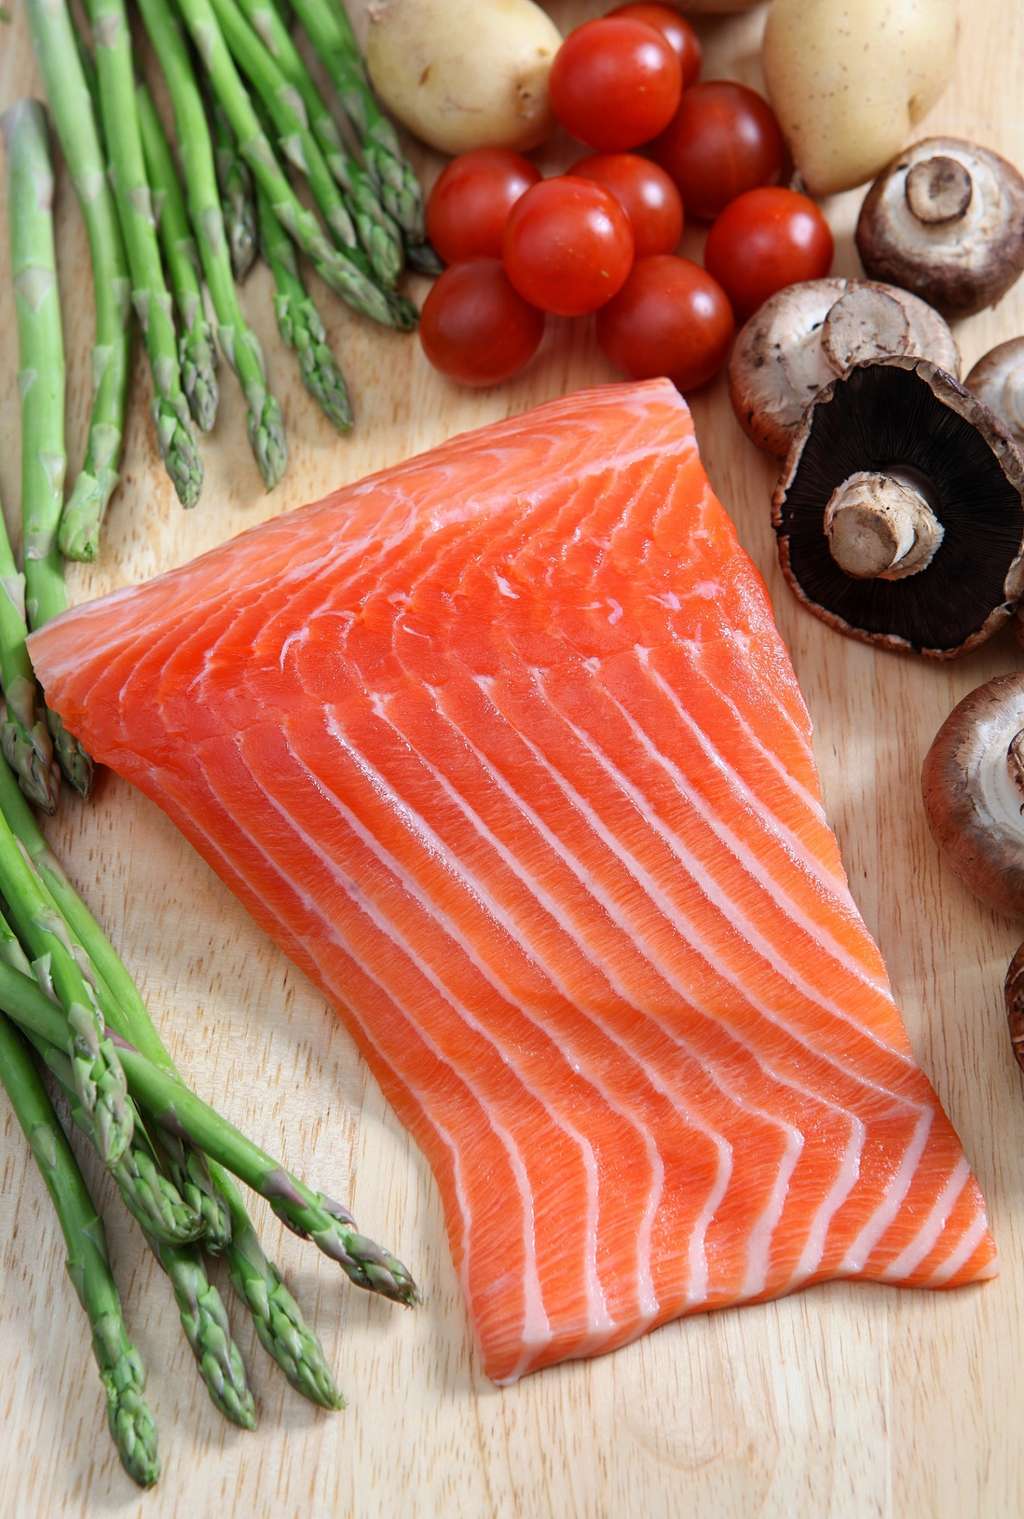 Les poissons gras comme le saumon sont une très bonne source d'oméga-3. © Paul Cowan, Shutterstock.com